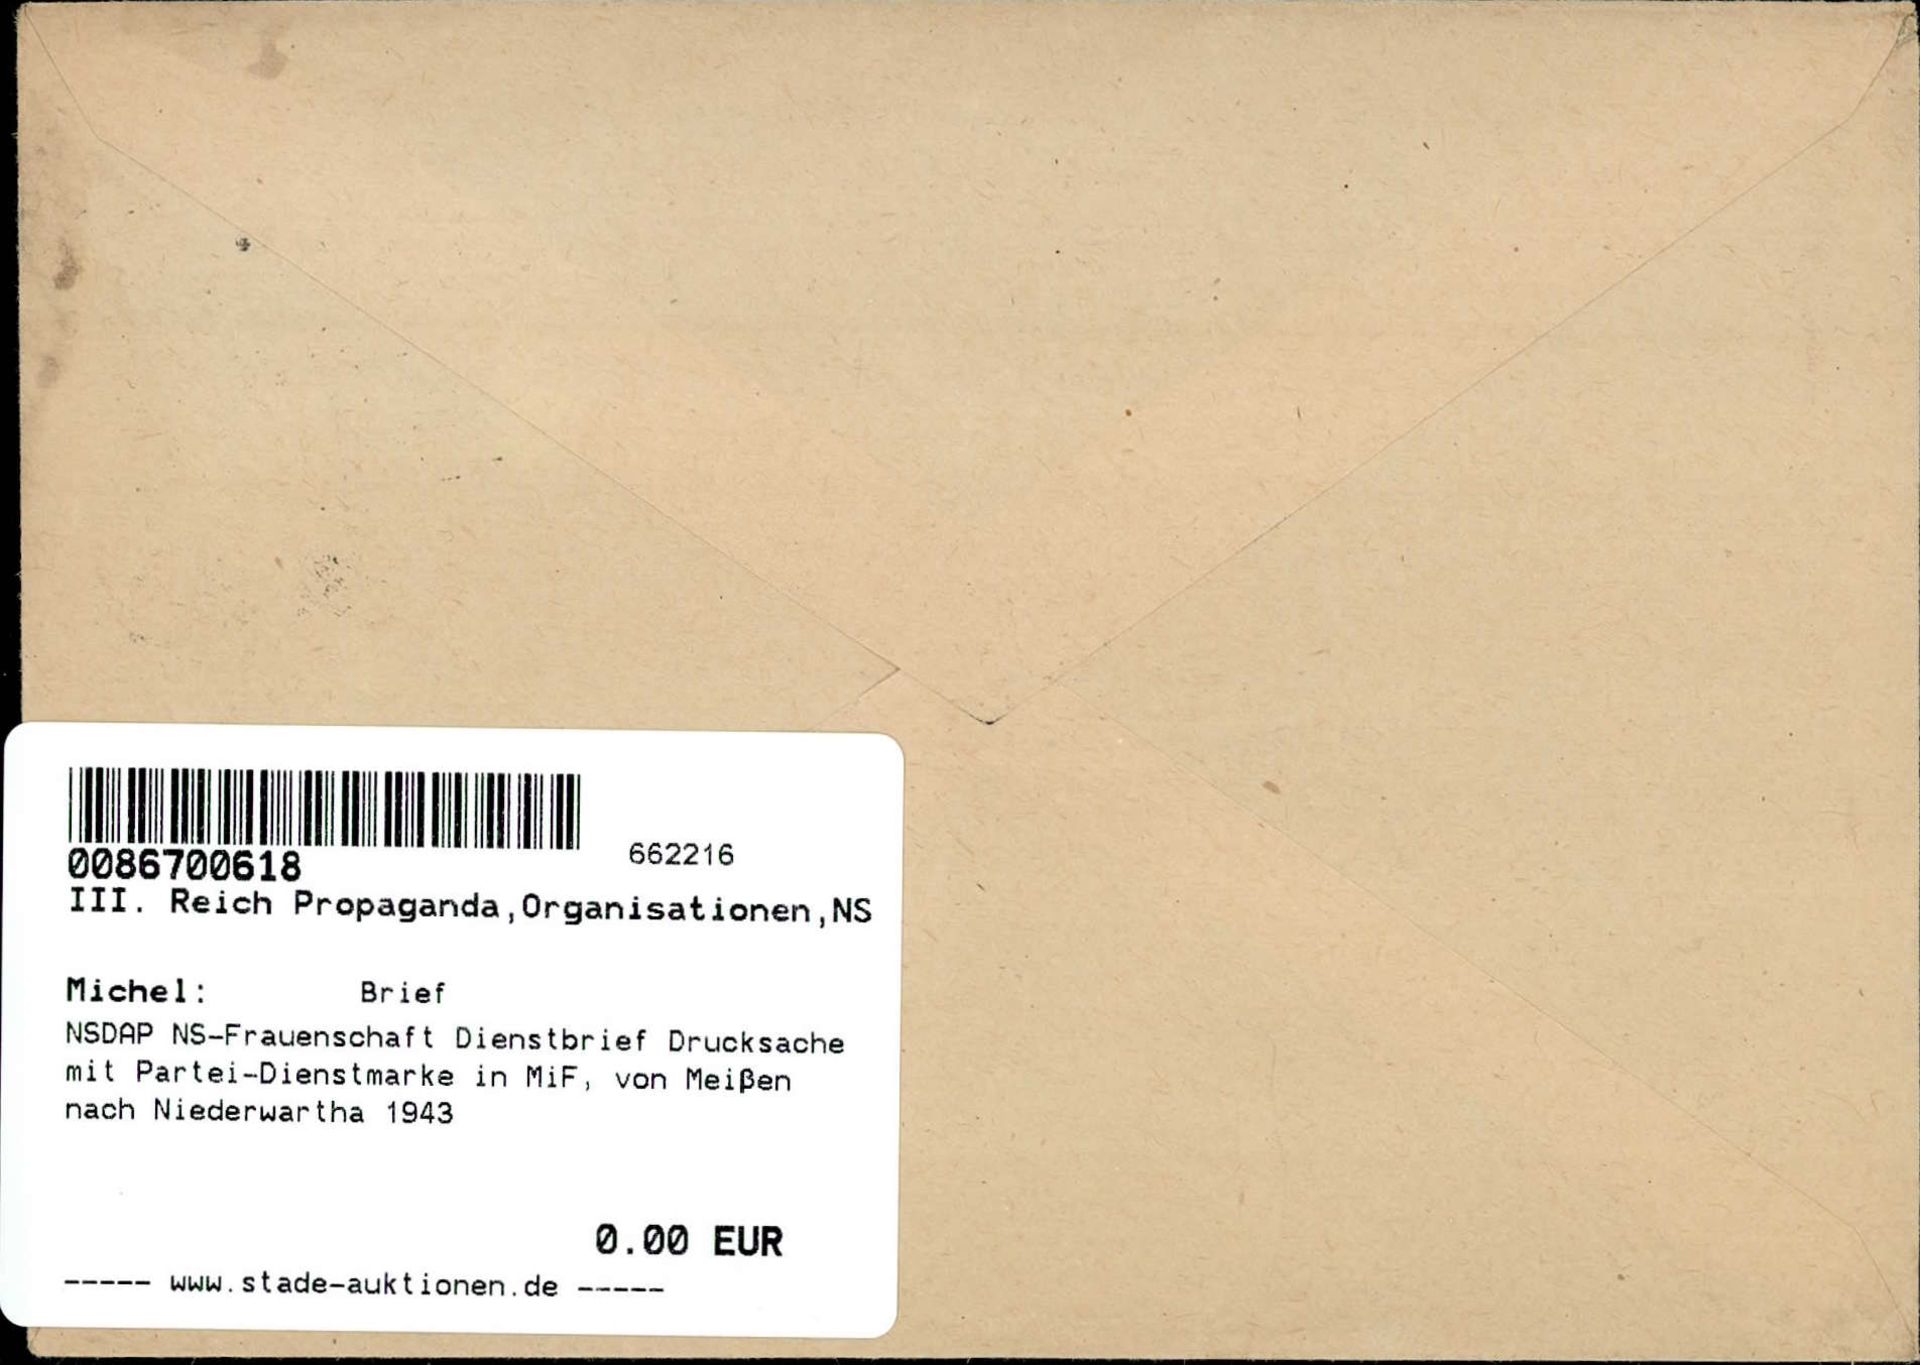 NSDAP NS-Frauenschaft Dienstbrief Drucksache mit Partei-Dienstmarke in MiF, von Meißen nach - Image 2 of 2